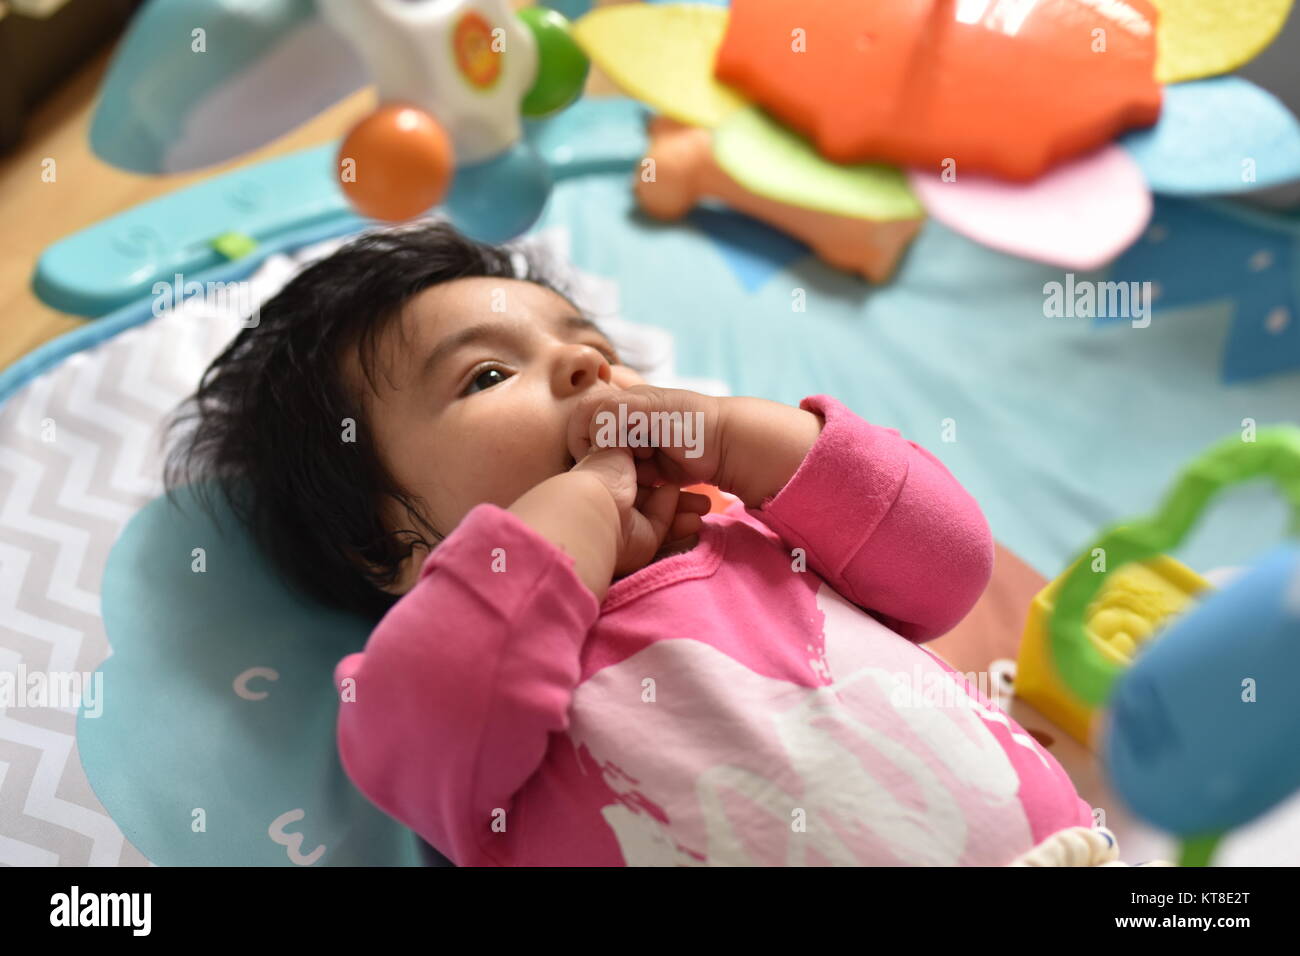 Baby Mädchen mit den Händen auf den Mund beobachtet aufmerksam ihre farbenfrohen Spielzeuge aus einem spielteppich Stockfoto